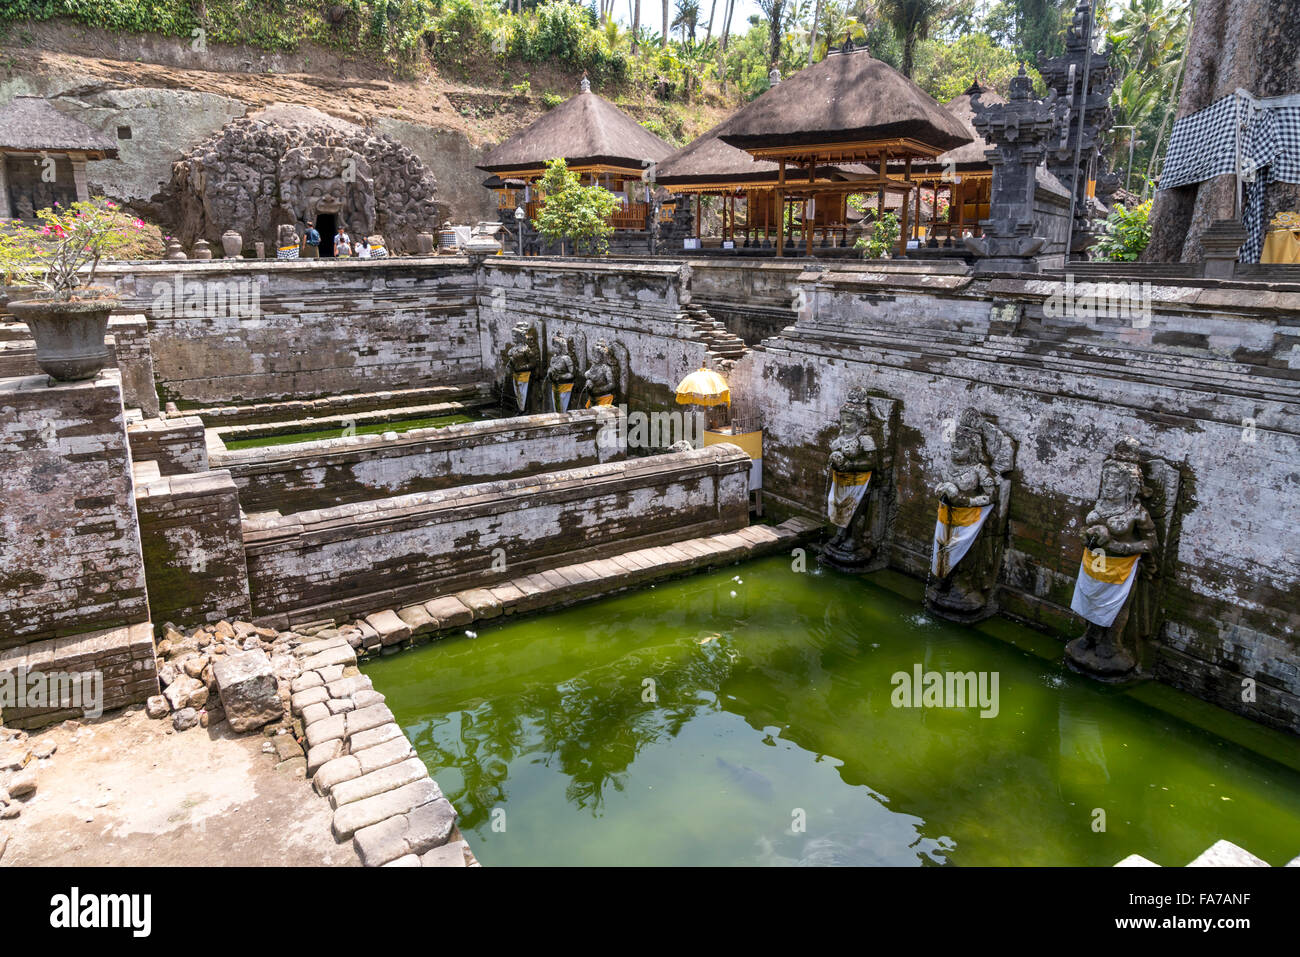 Bathing temple at the Elephant Cave Goa Gaja in Ubud, Bali, Indonesia Stock Photo